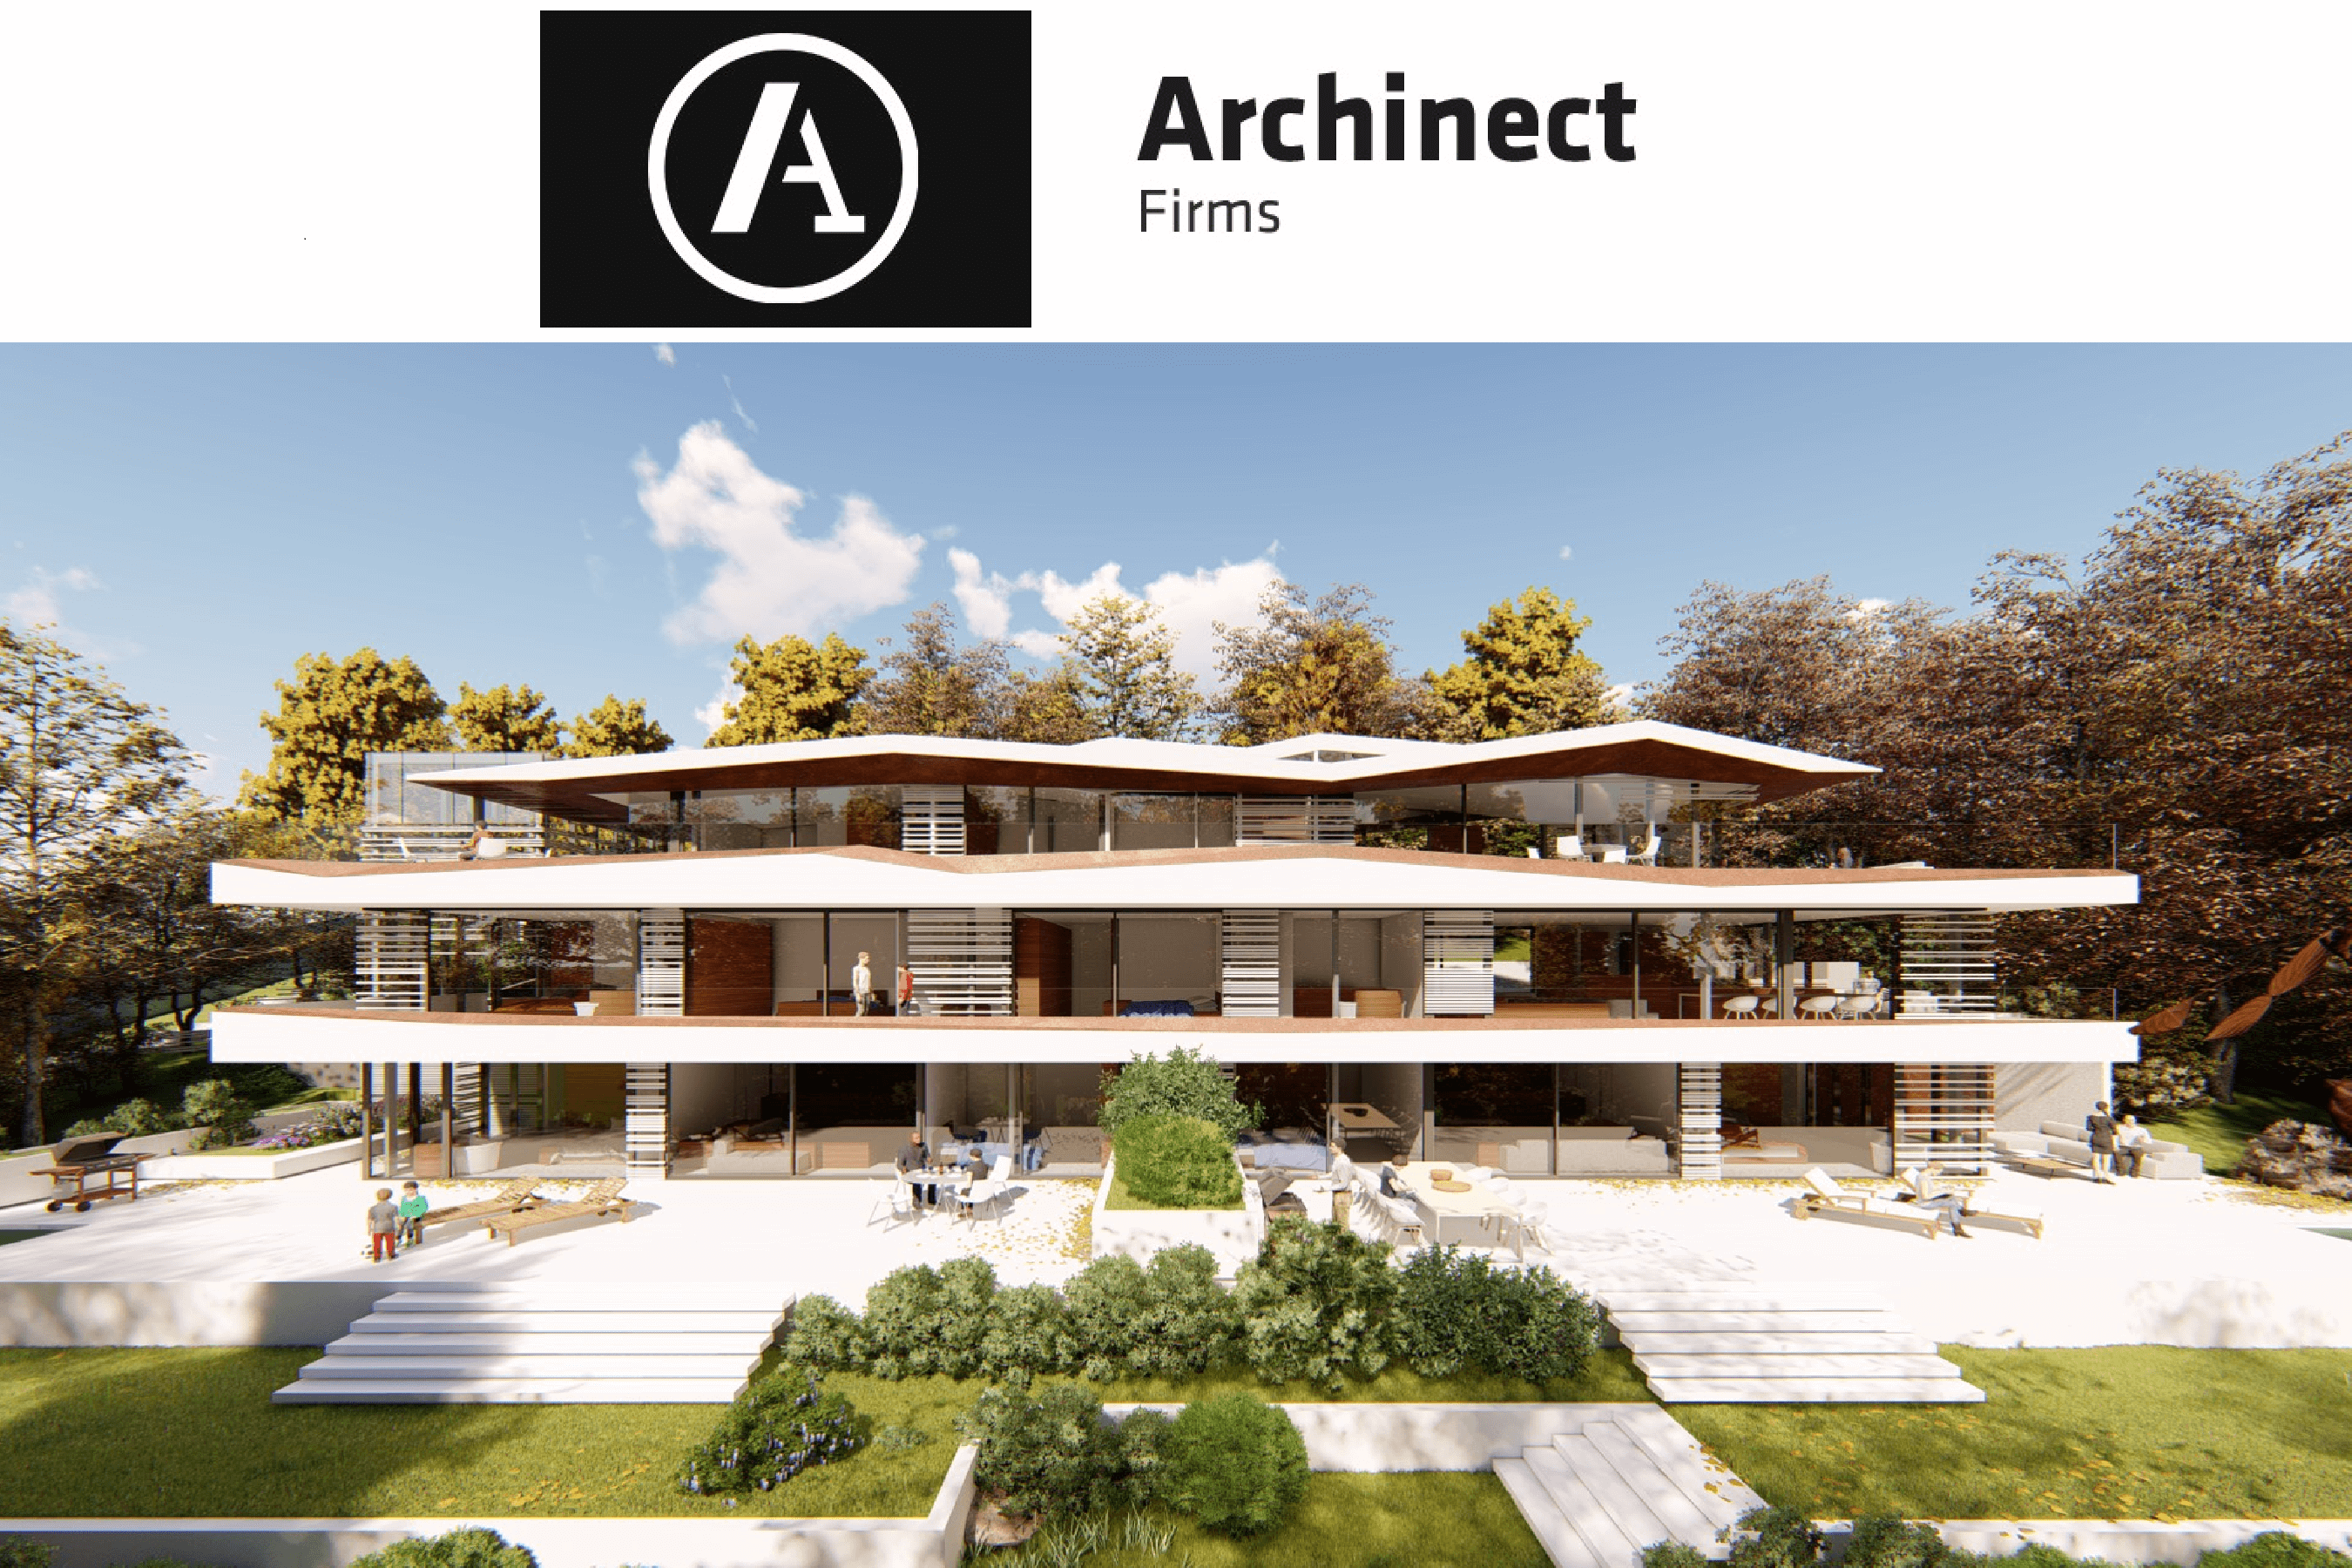 társasház tervezés_építészmérnök_Archinect